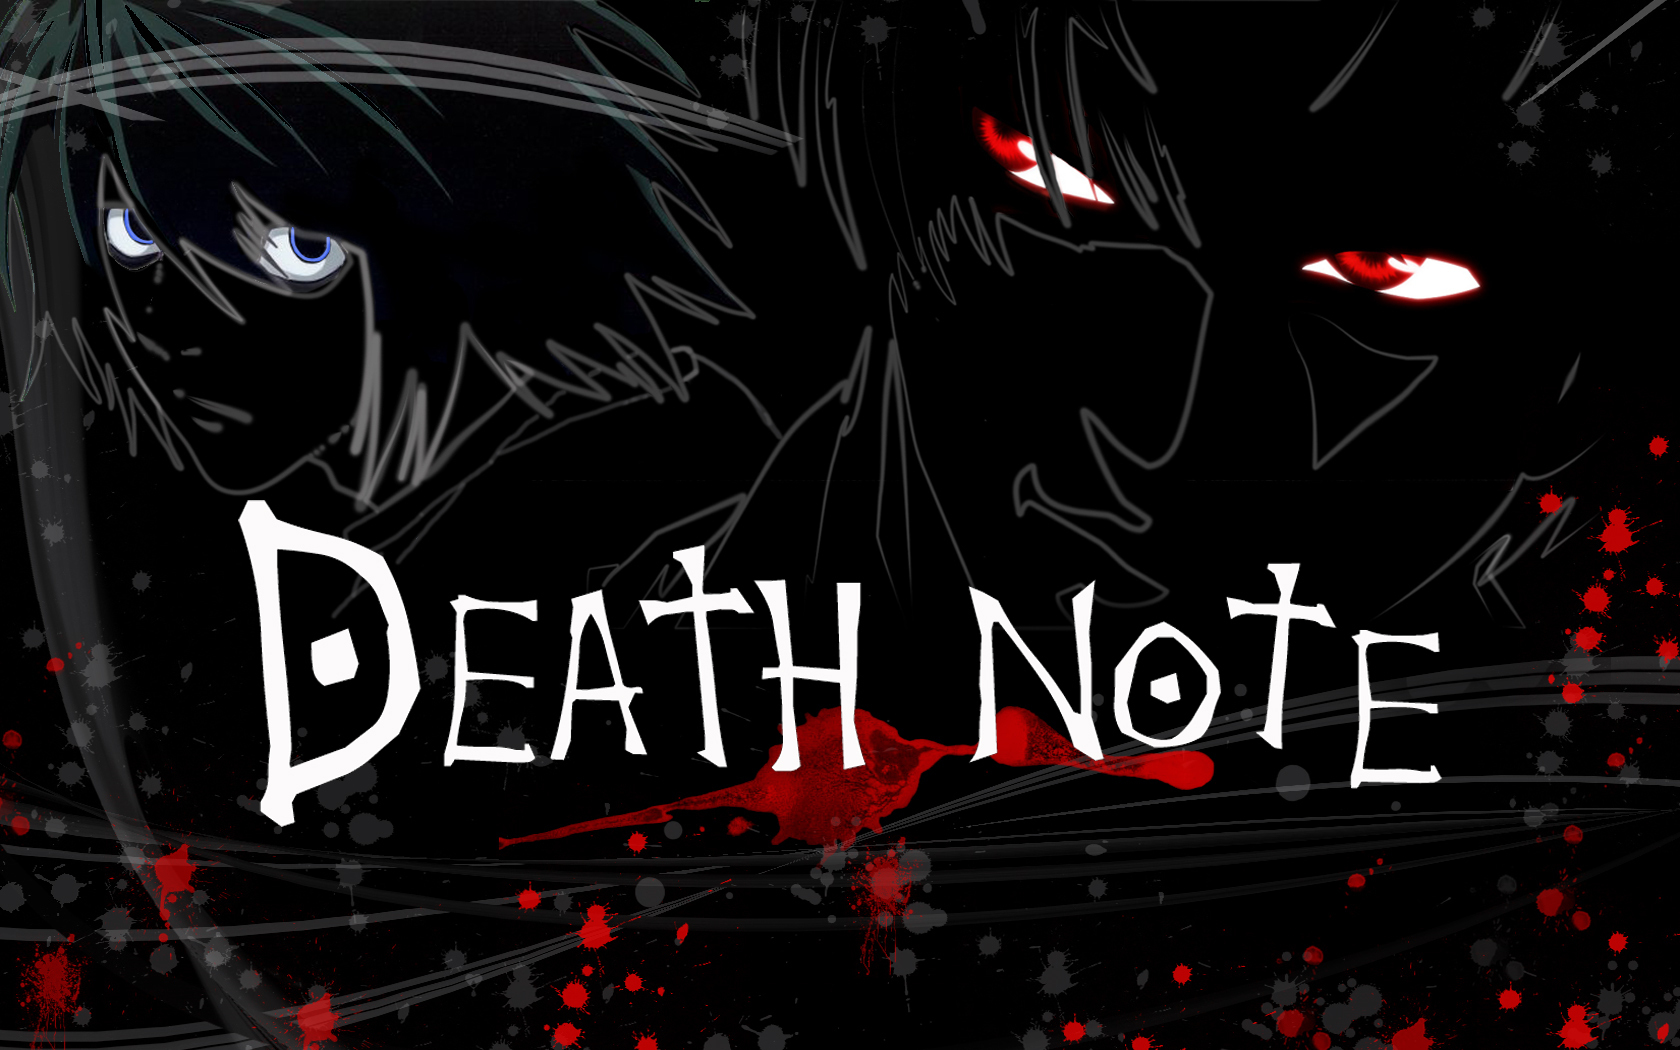 Death Note ganhará novo filme em live-action para 2016